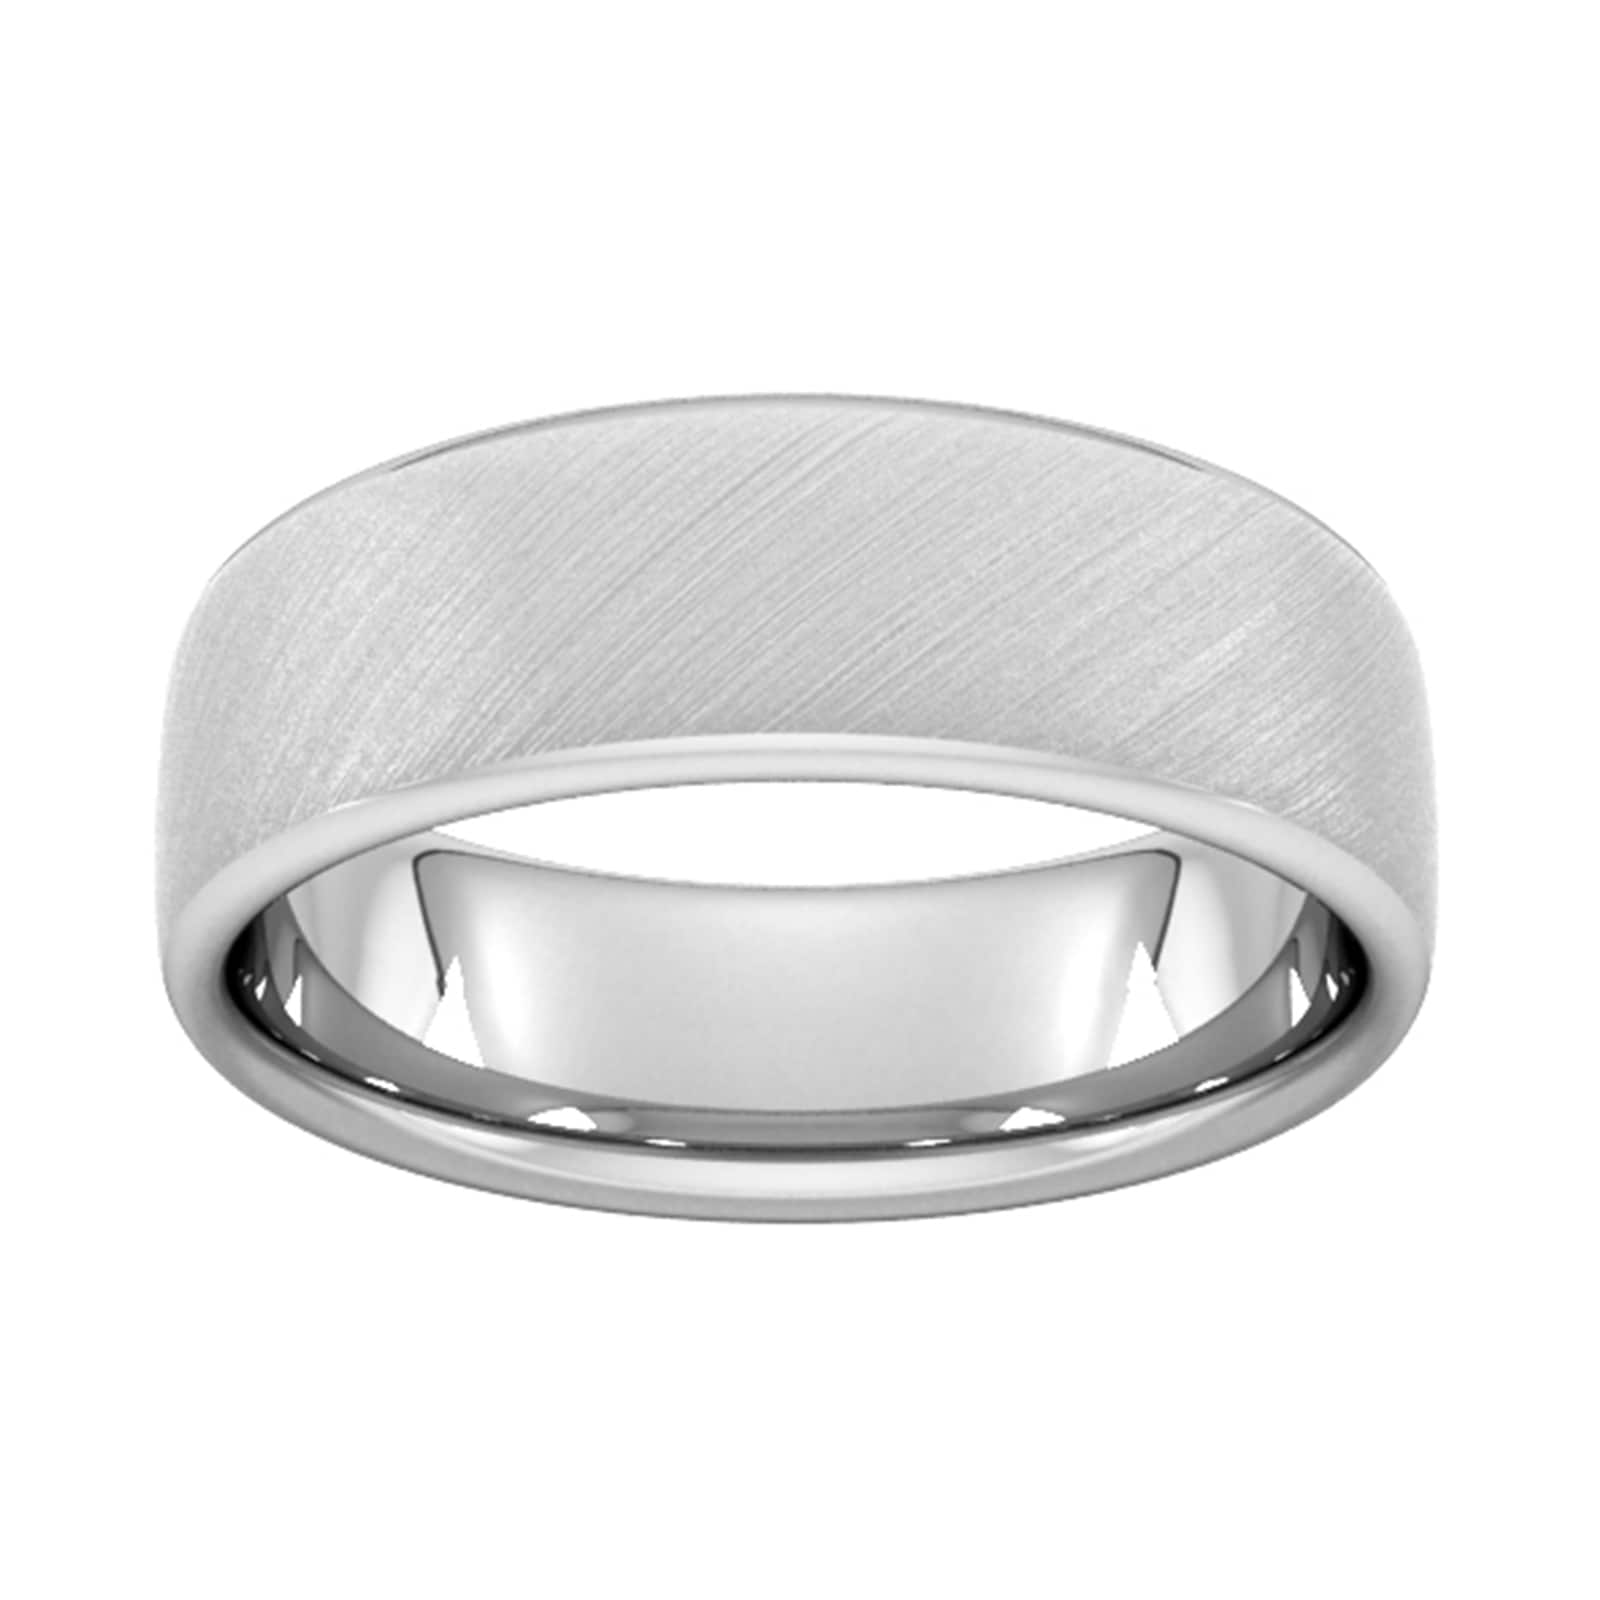 7mm Slight Court Heavy Diagonal Matt Finish Wedding Ring In 950 Palladium - Ring Size N